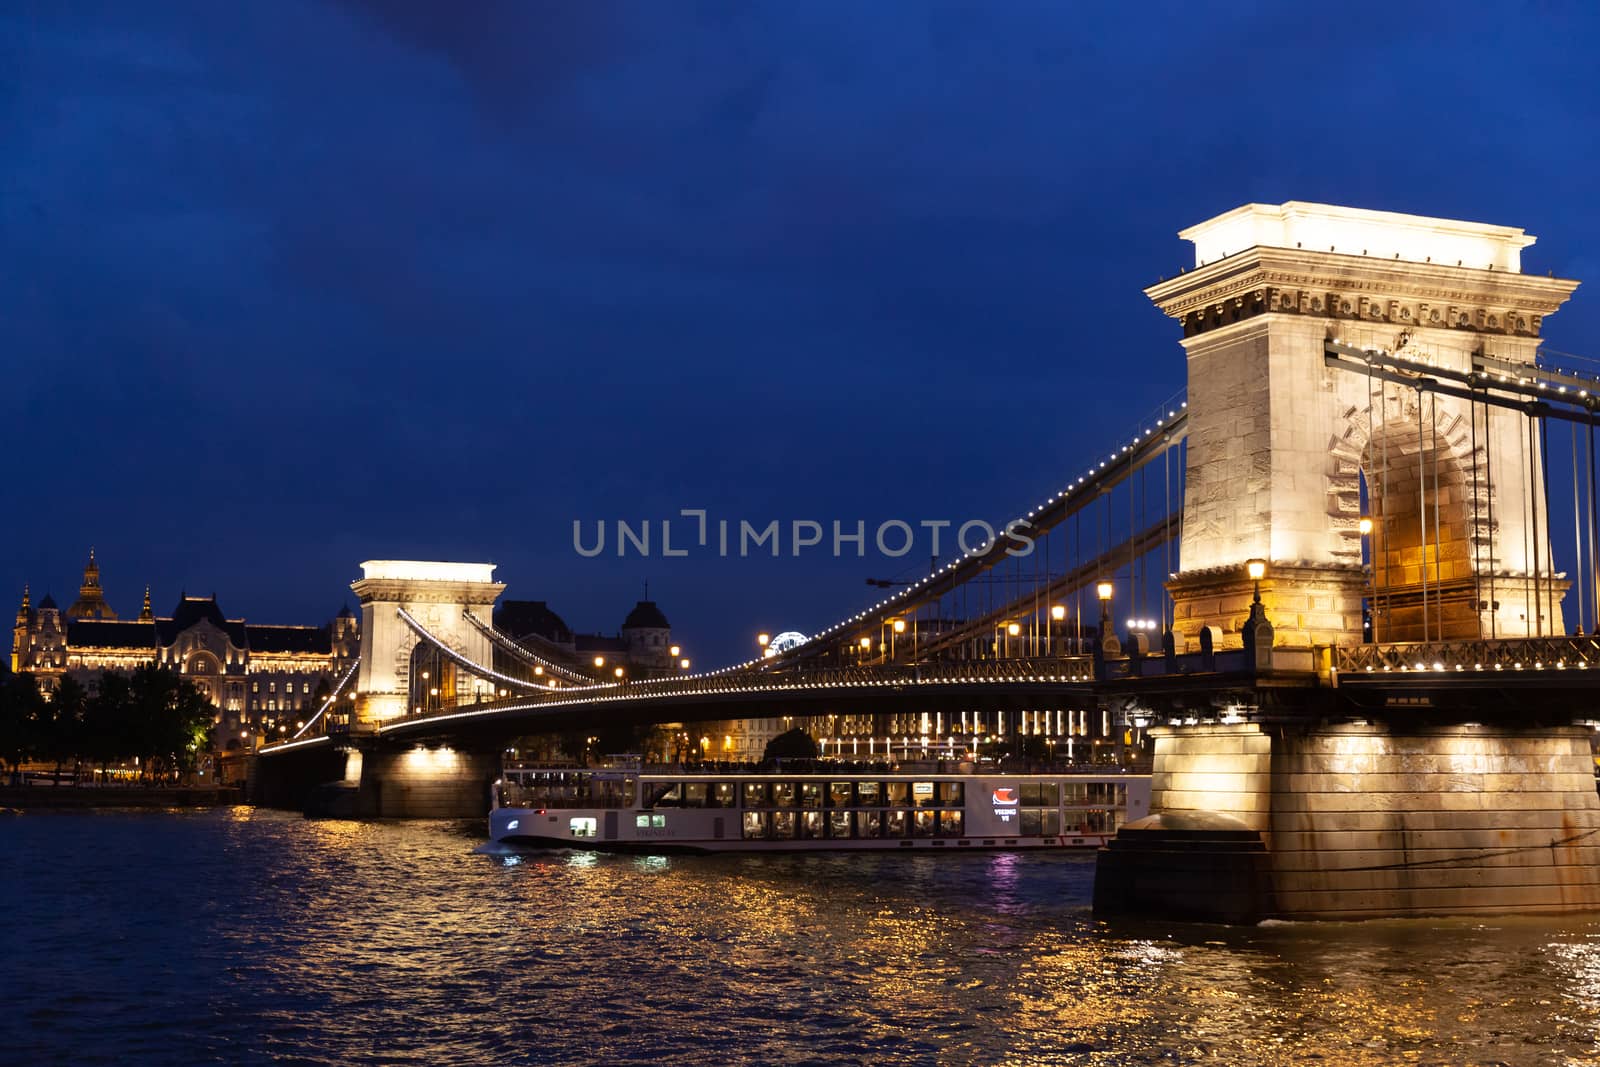 Szechenyi Chain Bridge at night, Budapest, Hungary by vlad-m